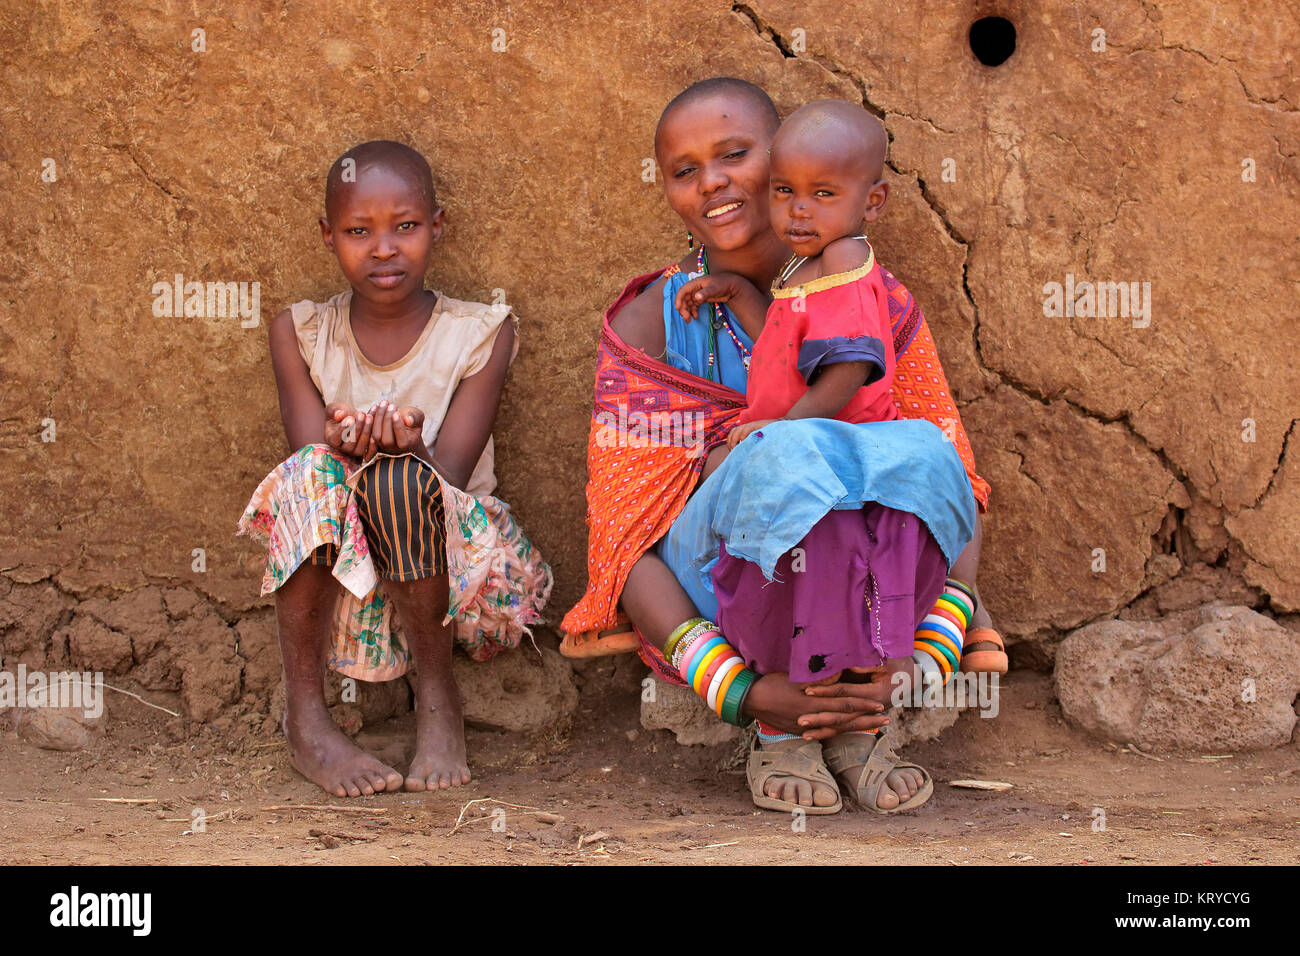 AMBOSELI, KENYA - Agosto 31, 2013: Unidentified Masai donna e i suoi figli con tradizionali decorazioni colorate e indumenti di colore rosso in un villaggio rurale Foto Stock